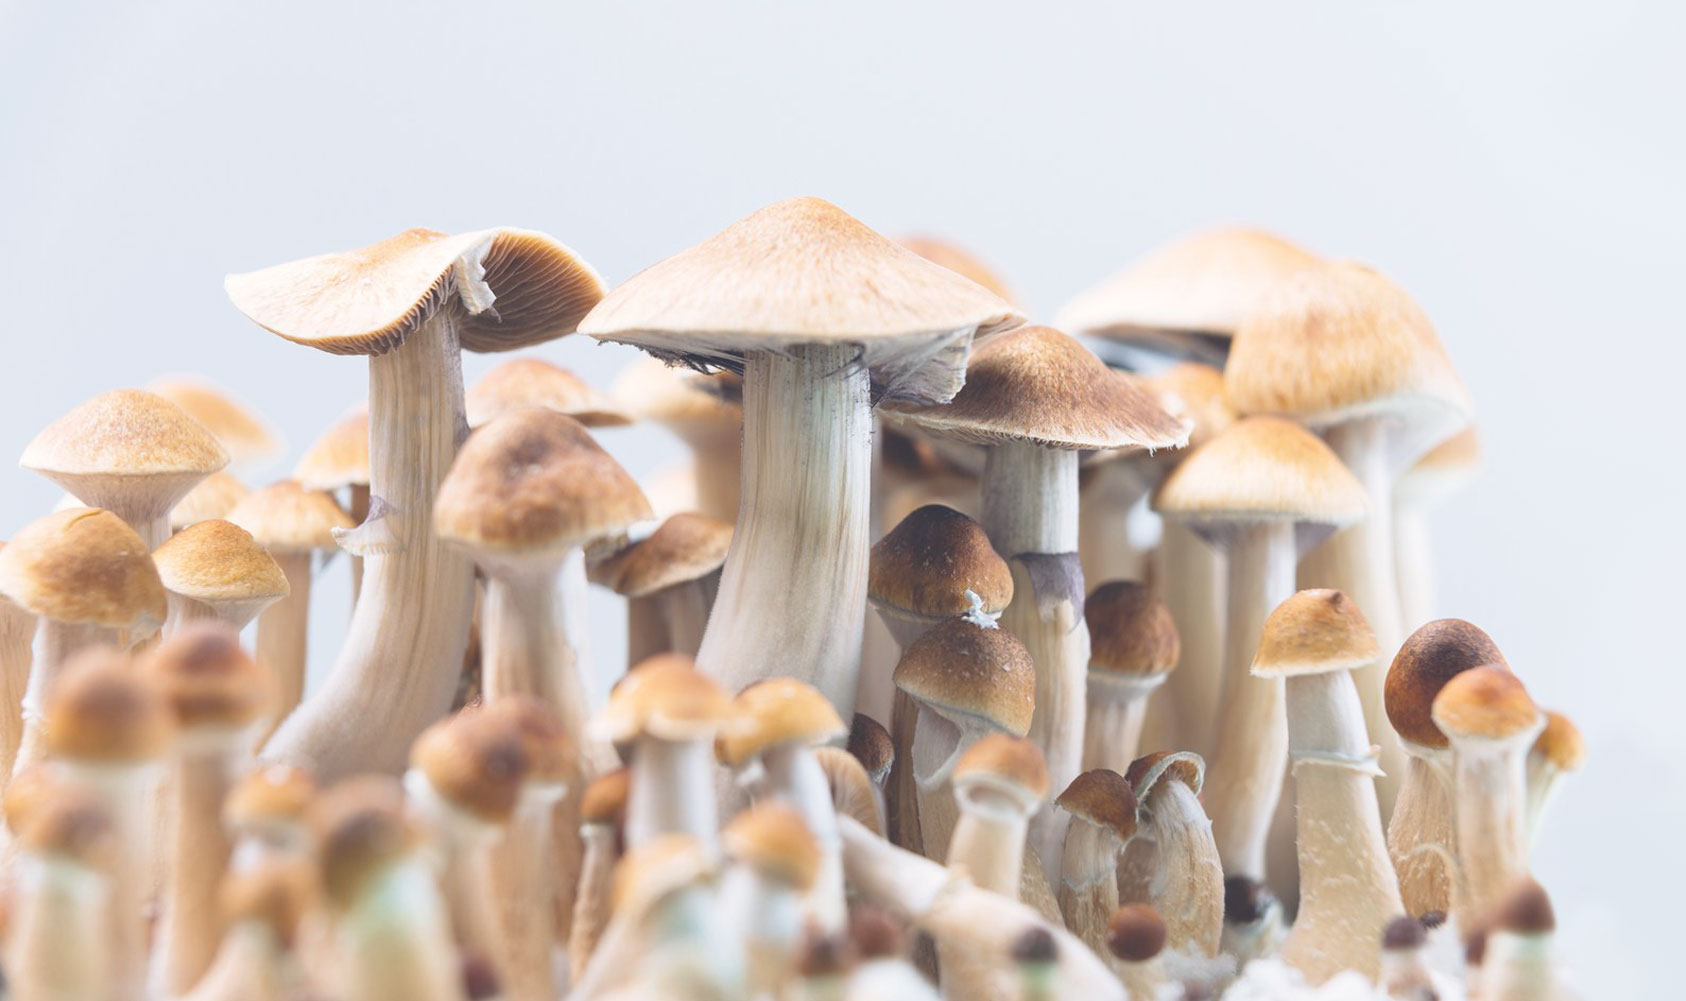 A group of natural psilocybin mushrooms